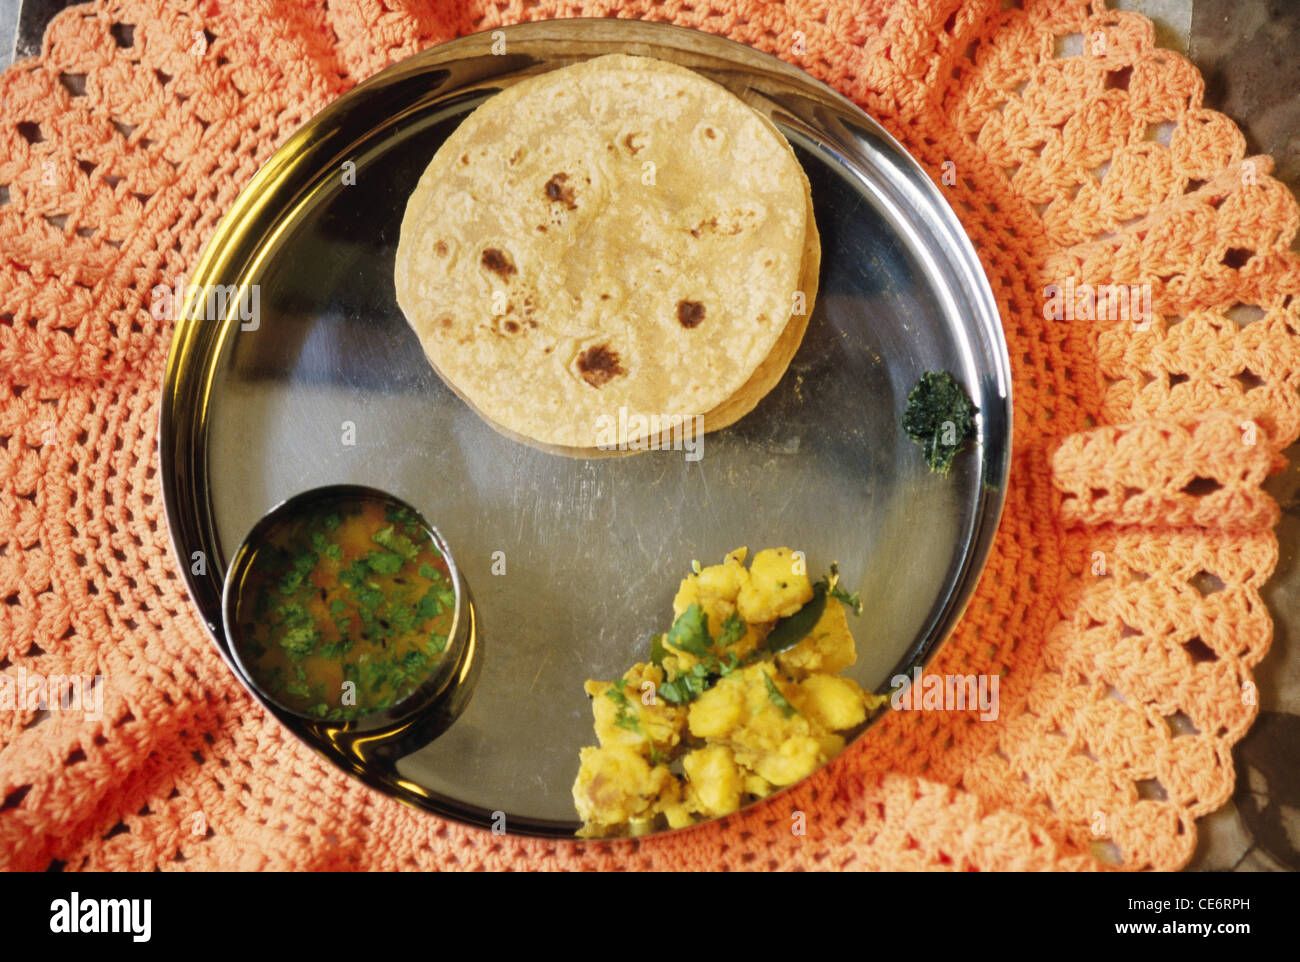 VHM 84990 : repas végétarien indien roti pain phulka déjeuner Légumes Pommes et curry de lentilles dal servi en Inde thali en acier Banque D'Images